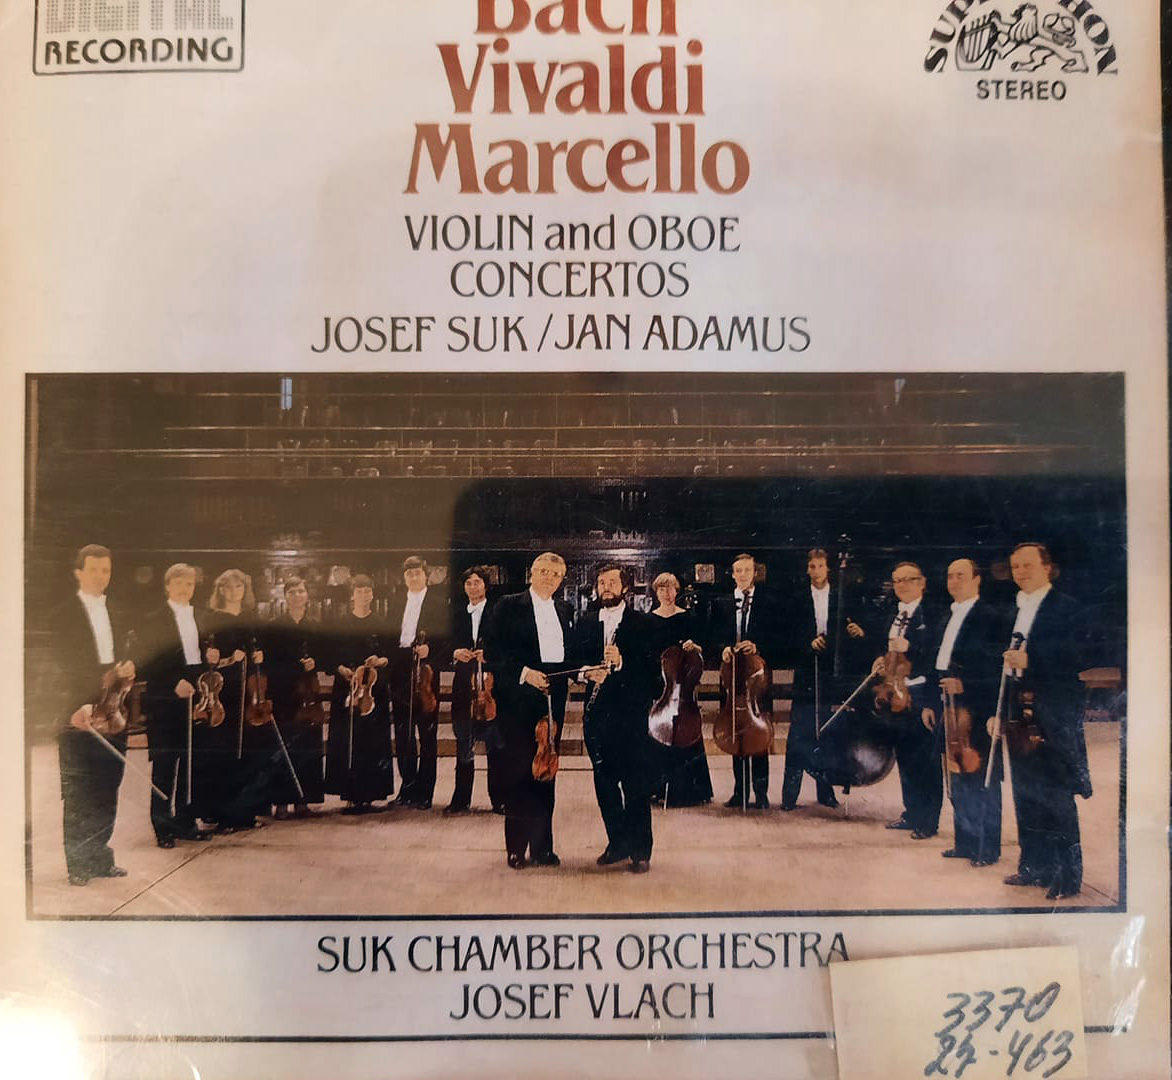 Կոնցերտ D-minor ջութակի, հոբոյի, լարային նվագախմբի և նվագակցության համար BWV 1060 (1), Կոնցերտ No 9 D-dur, L' Estro armonico ջութակի, լարային նվագախմբի և նվագակցության համար op. 3 (RV 230),